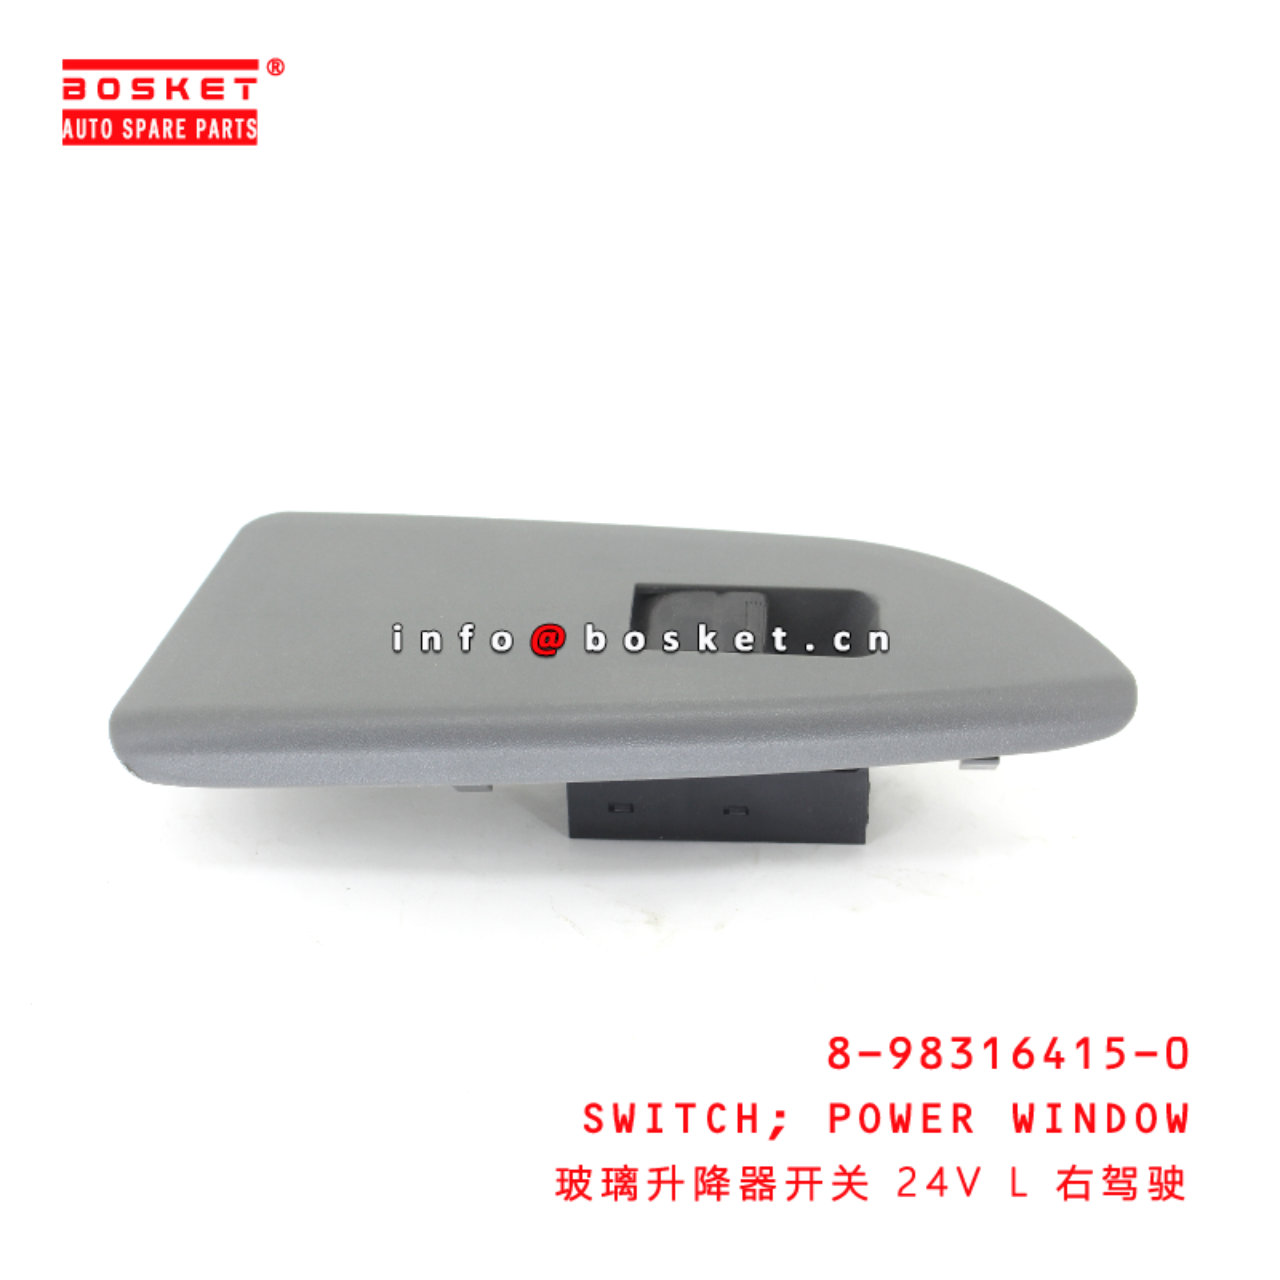 8-98316415-0 Power Window Switch suitable for ISUZU 700P VC46 4HK1 6UZ1 8983164150